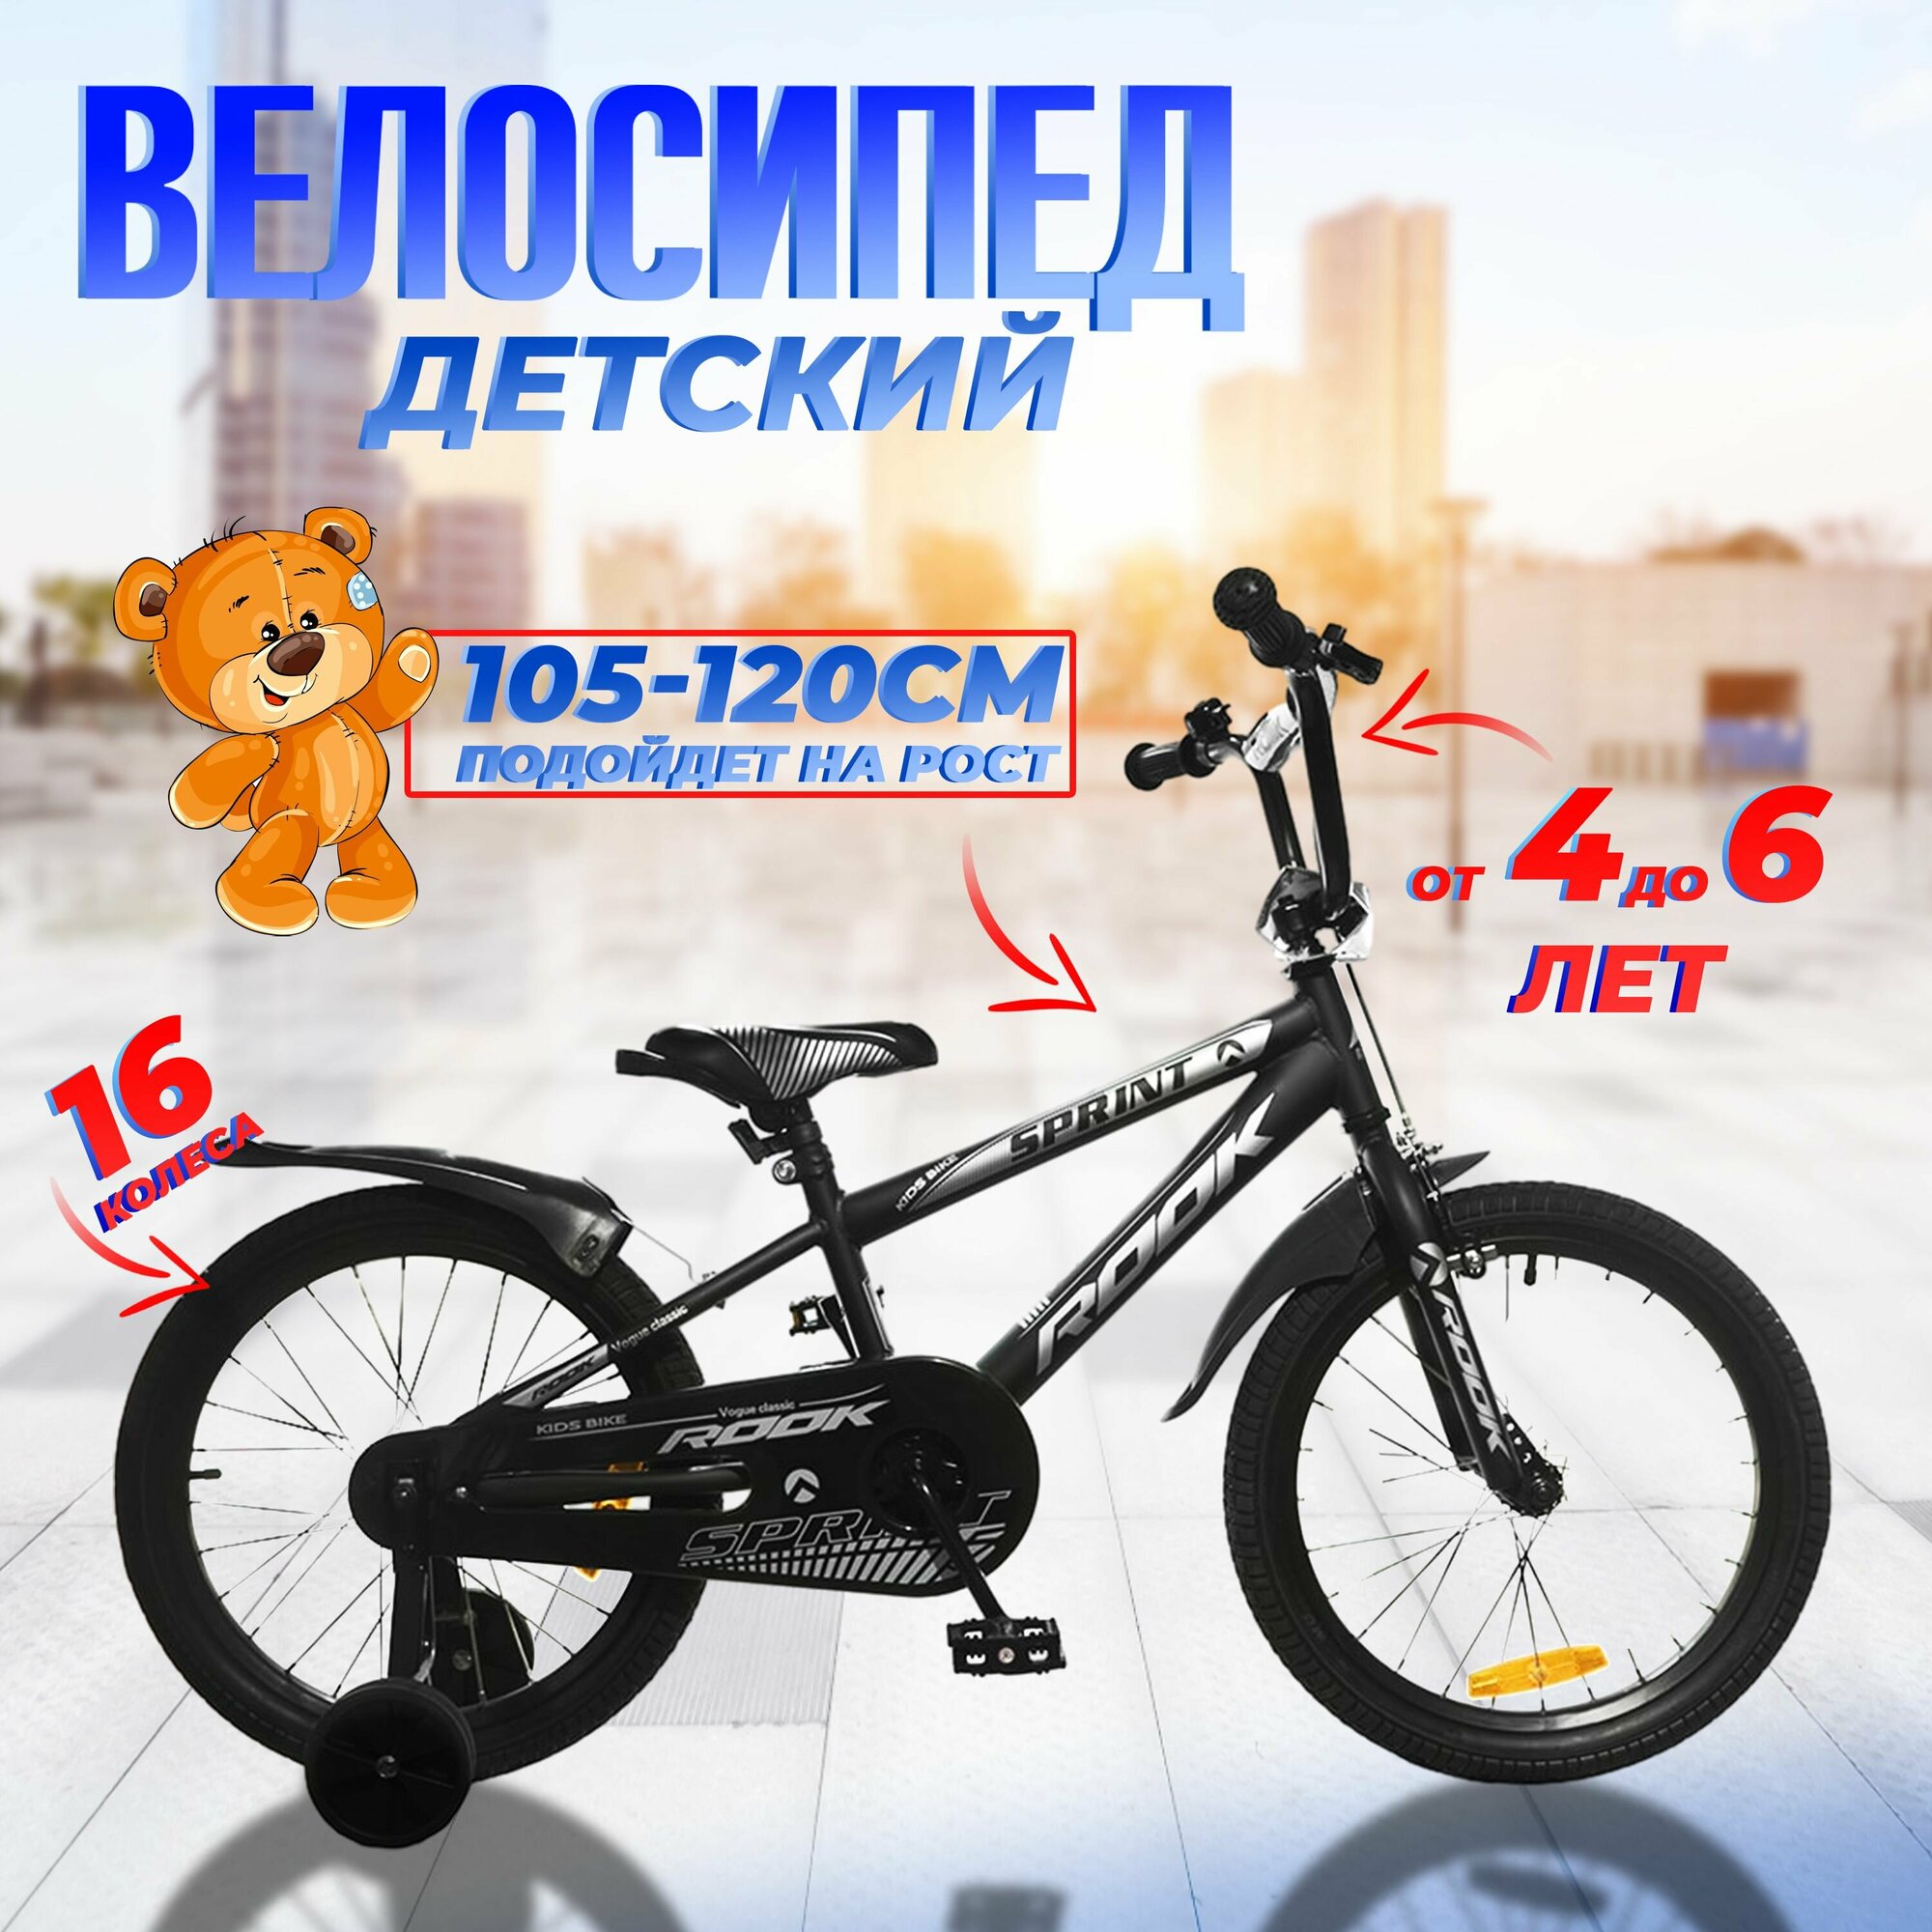 Велосипед двухколесный детский 16" дюймов Rook Sprint, рост 105 -120 см, черный. От 4 до 6 лет / для мальчика / для девочки